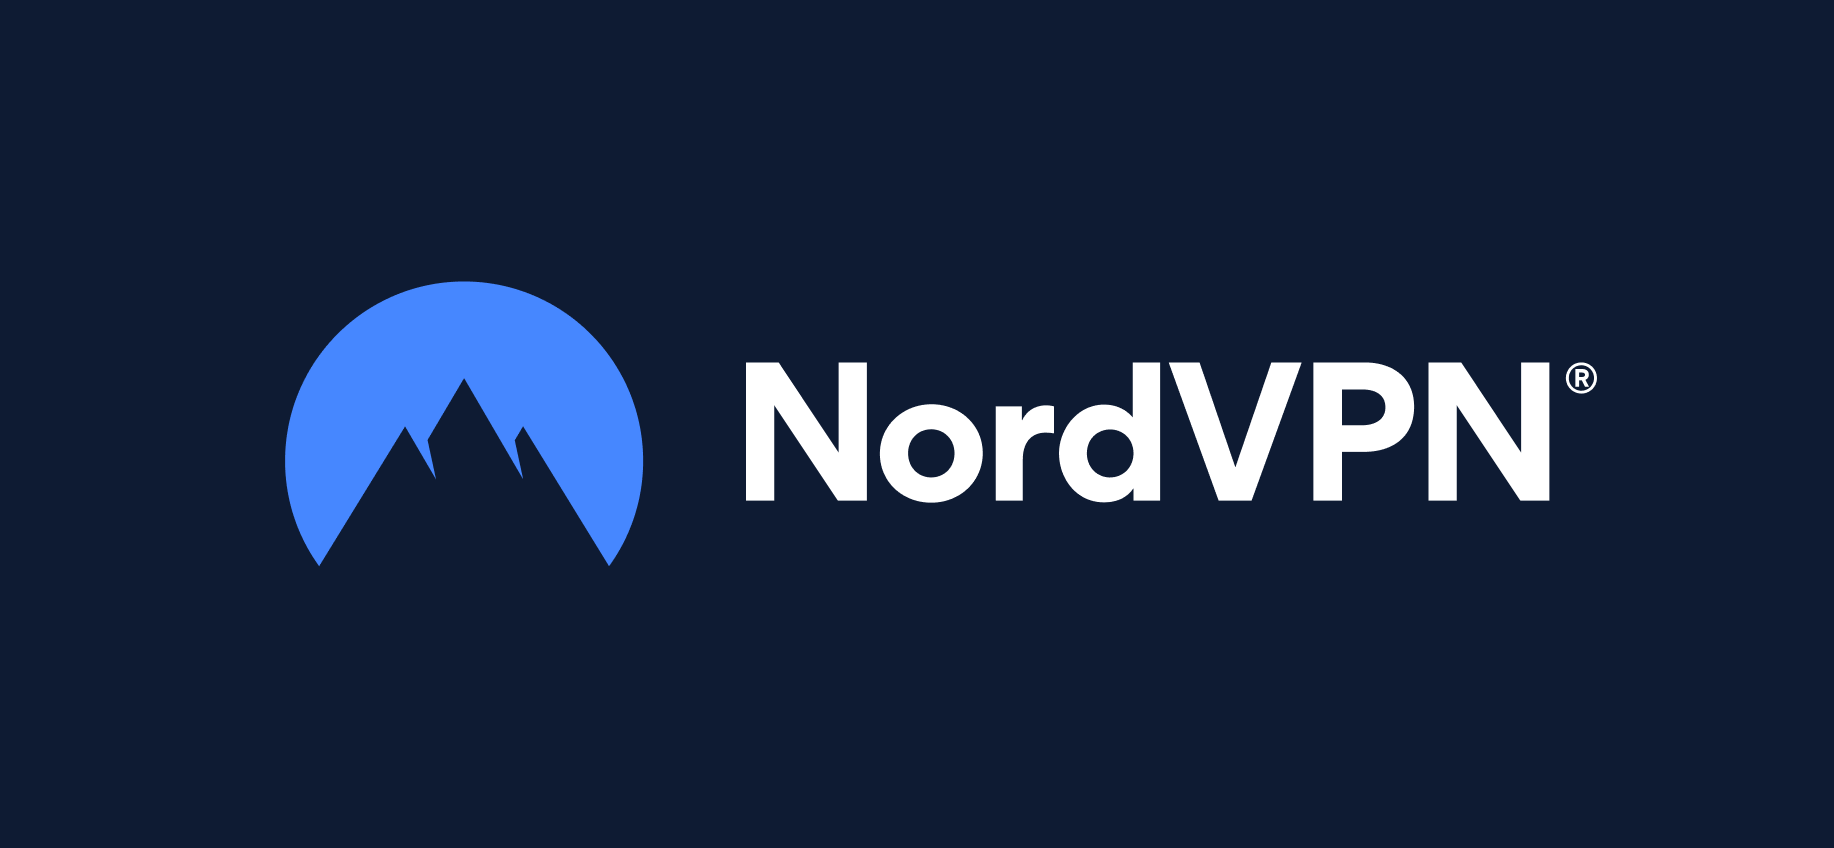 Tutti parlano di NordVPN come la migliore VPN: sarà vero?